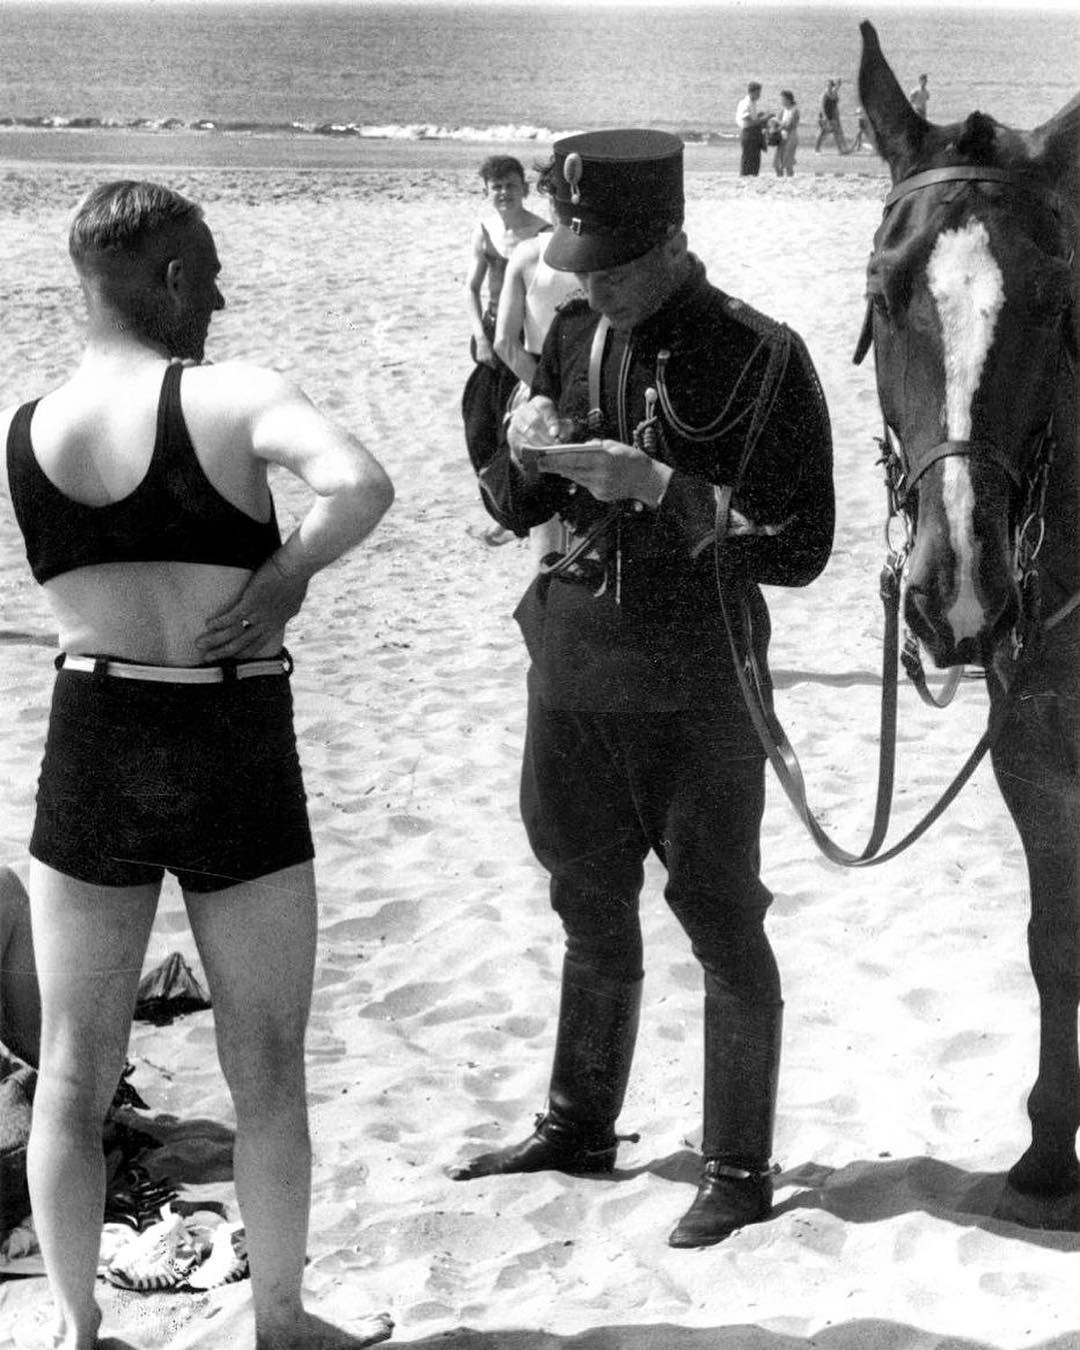 Người đàn ông ở bãi biển bị phạt vì mặc đồ không phù hợp, Hà Lan, 1931